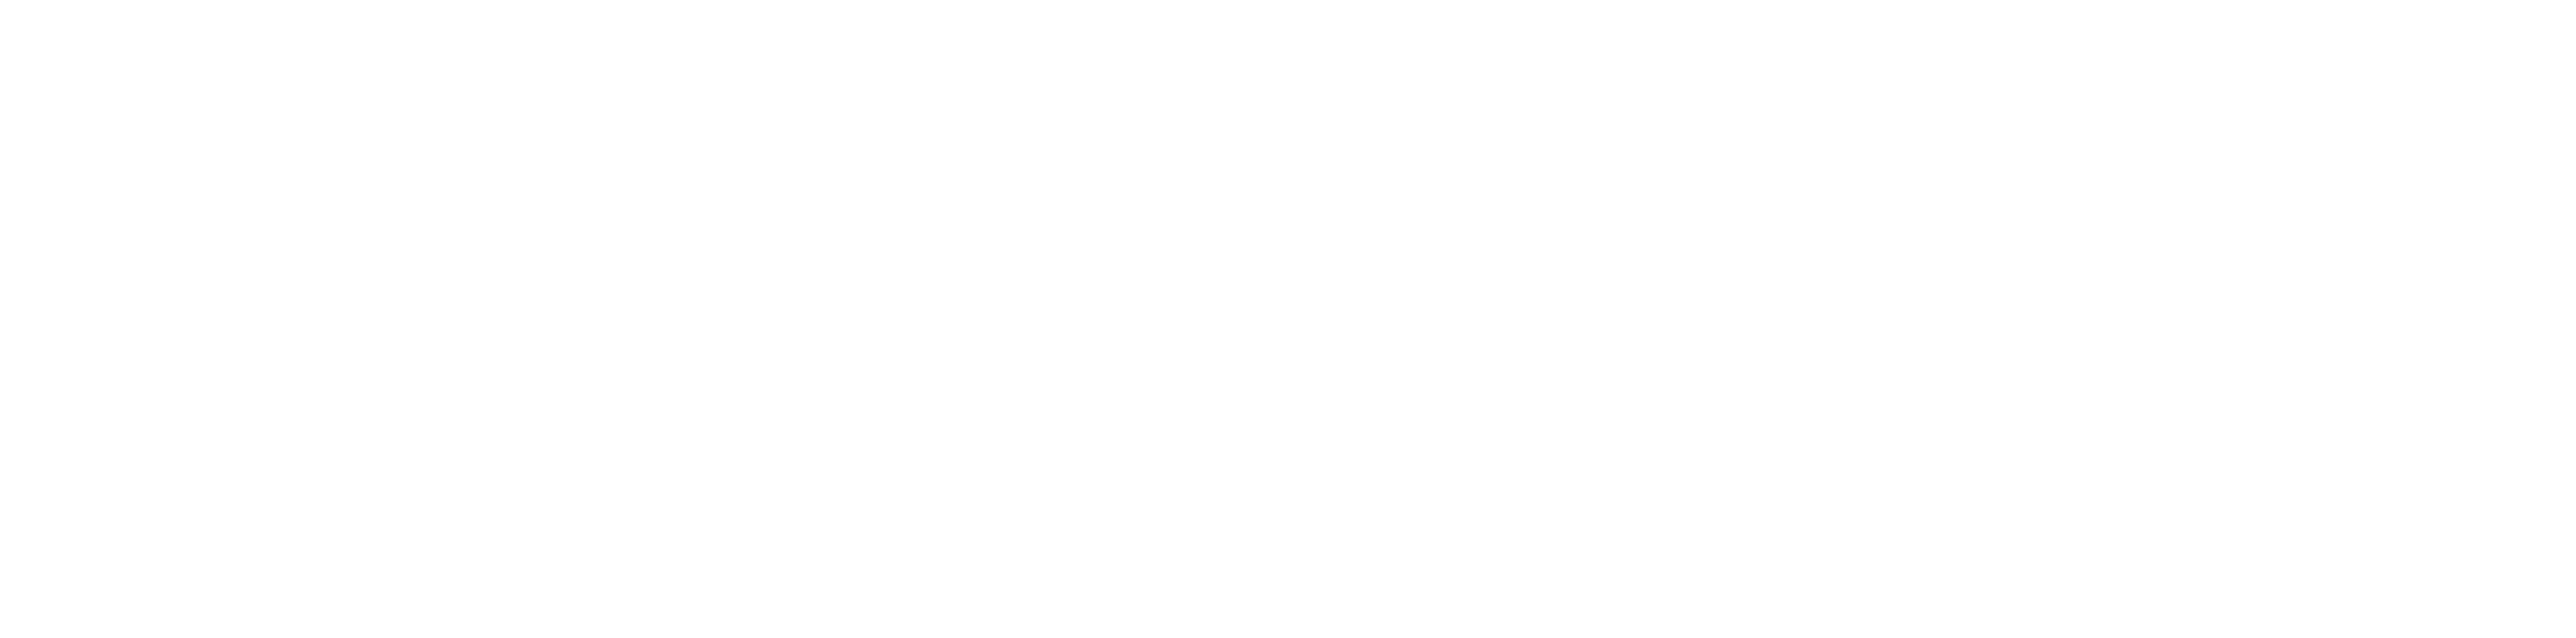 Stem Next Opportunity Fund logo